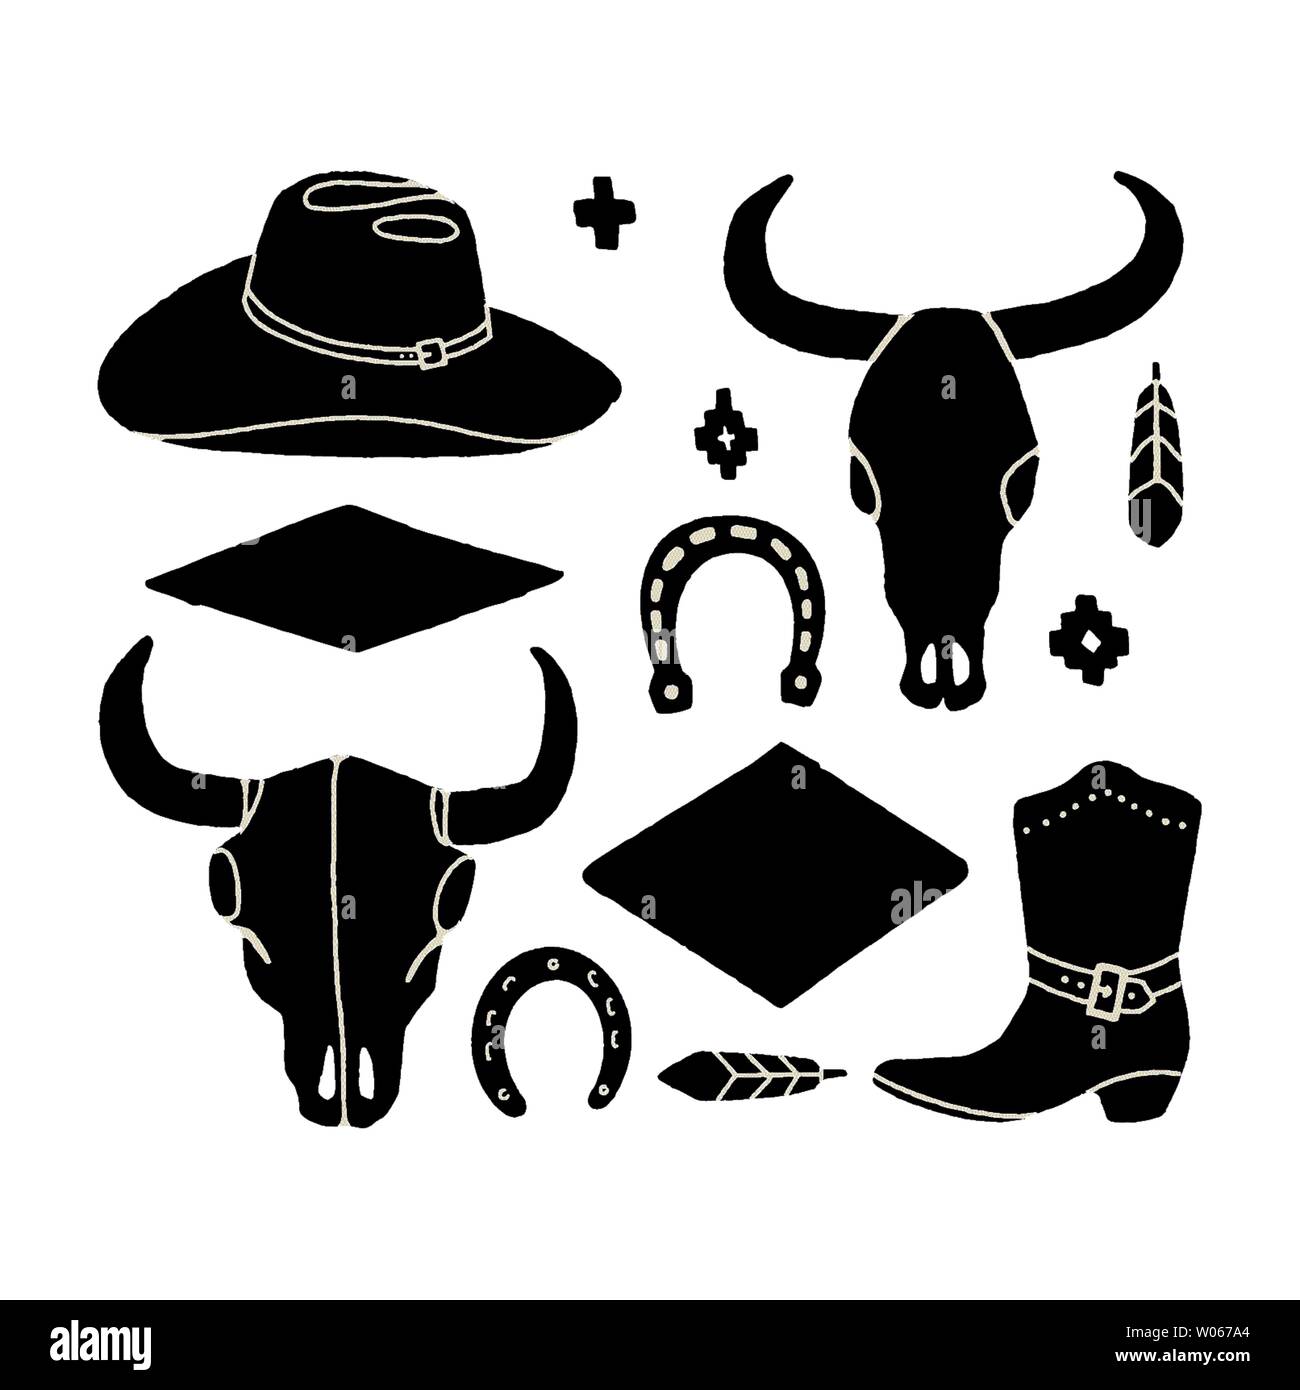 Vektor einrichten von Hand zeichnen Elemente des Wilden Westens. Cowboy Western Symbole in Schwarzweiß. Designelemente für Logo, Label, Emblem, Zeichen, Abzeichen. Cowboy ha Stock Vektor